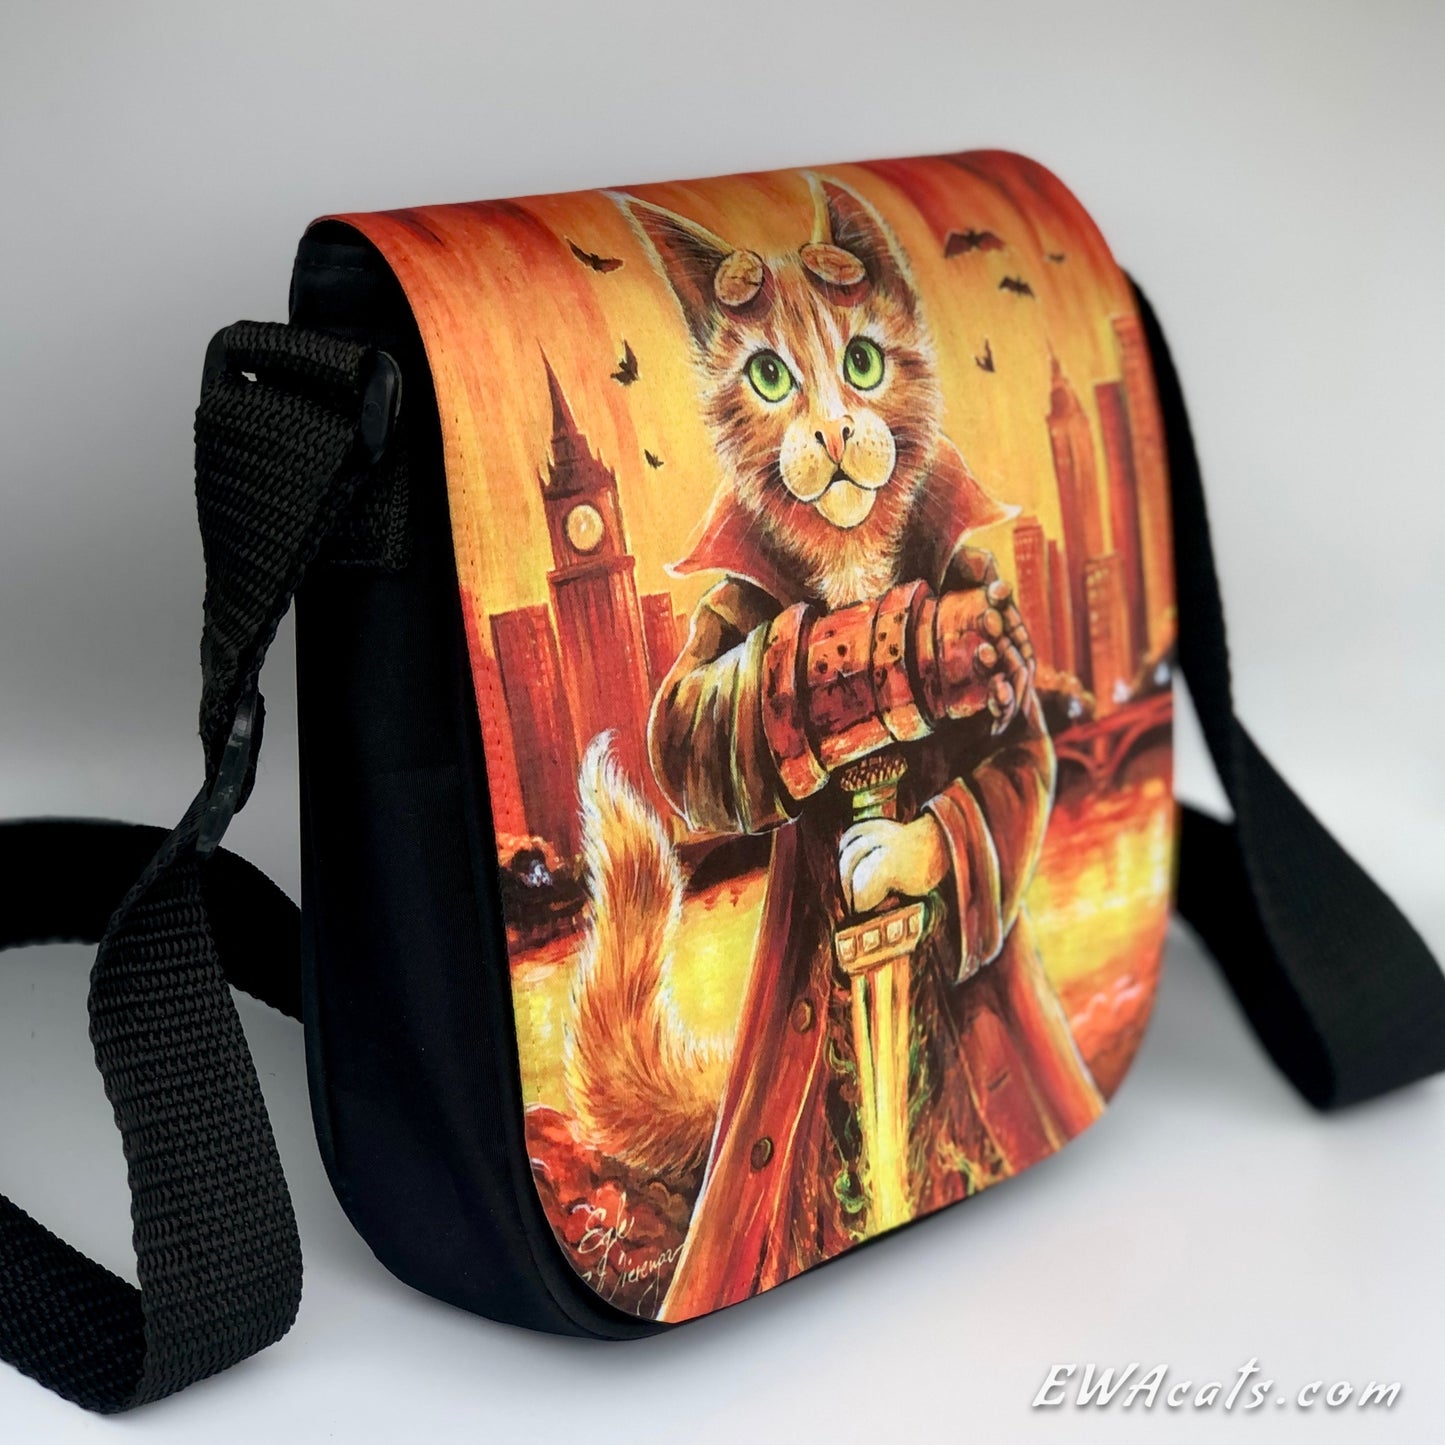 Shoulder Bag "Hellboy Kittyi"